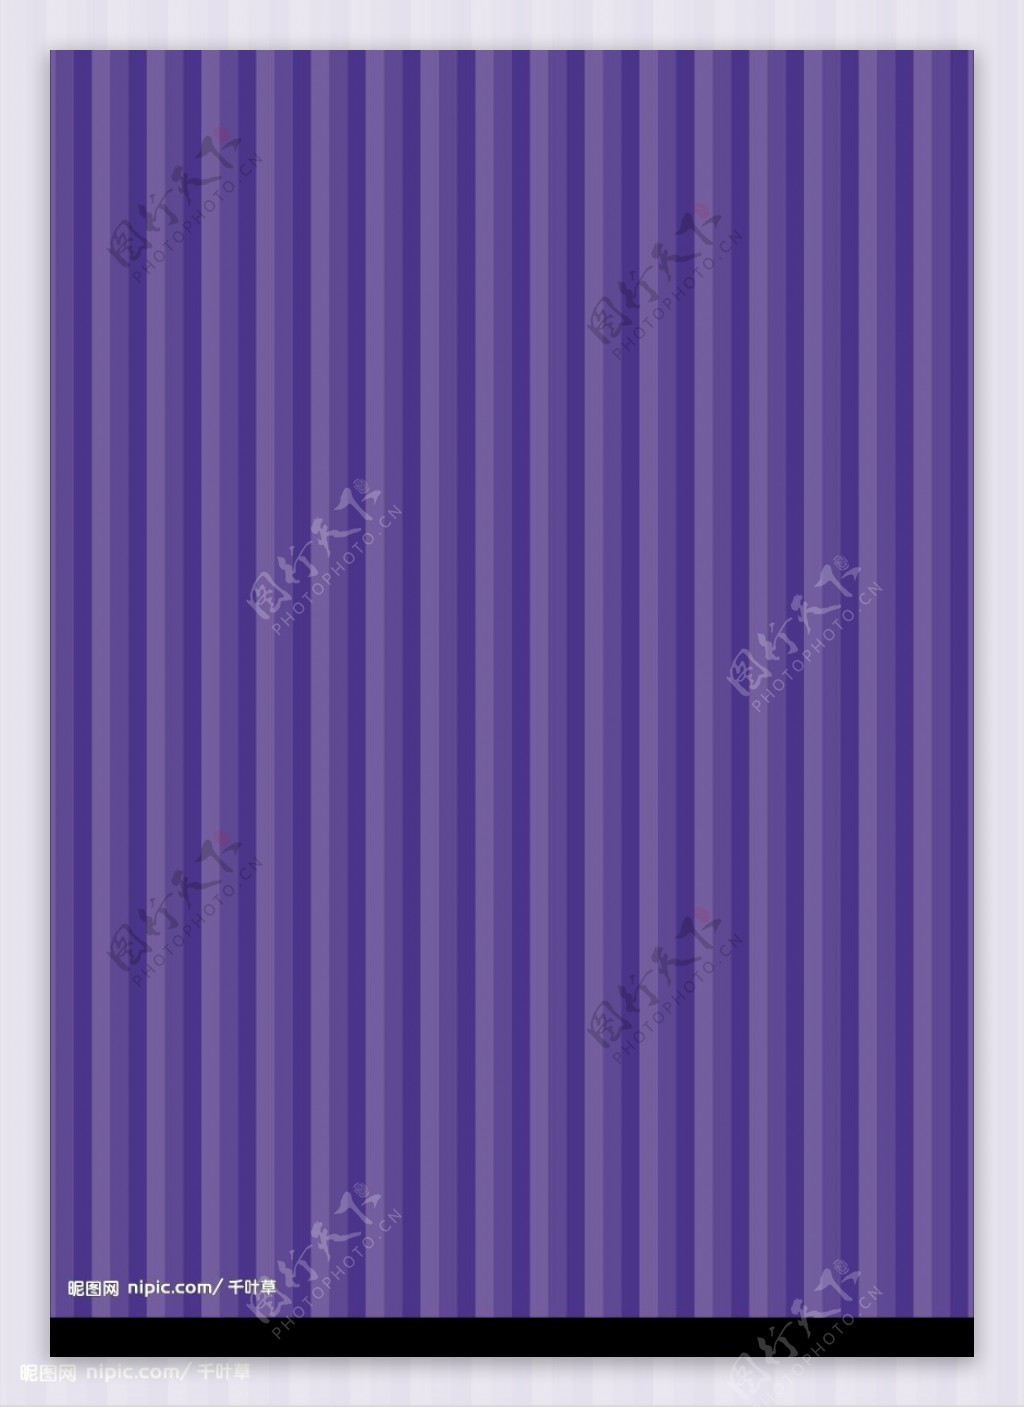 紫色条形纹图片